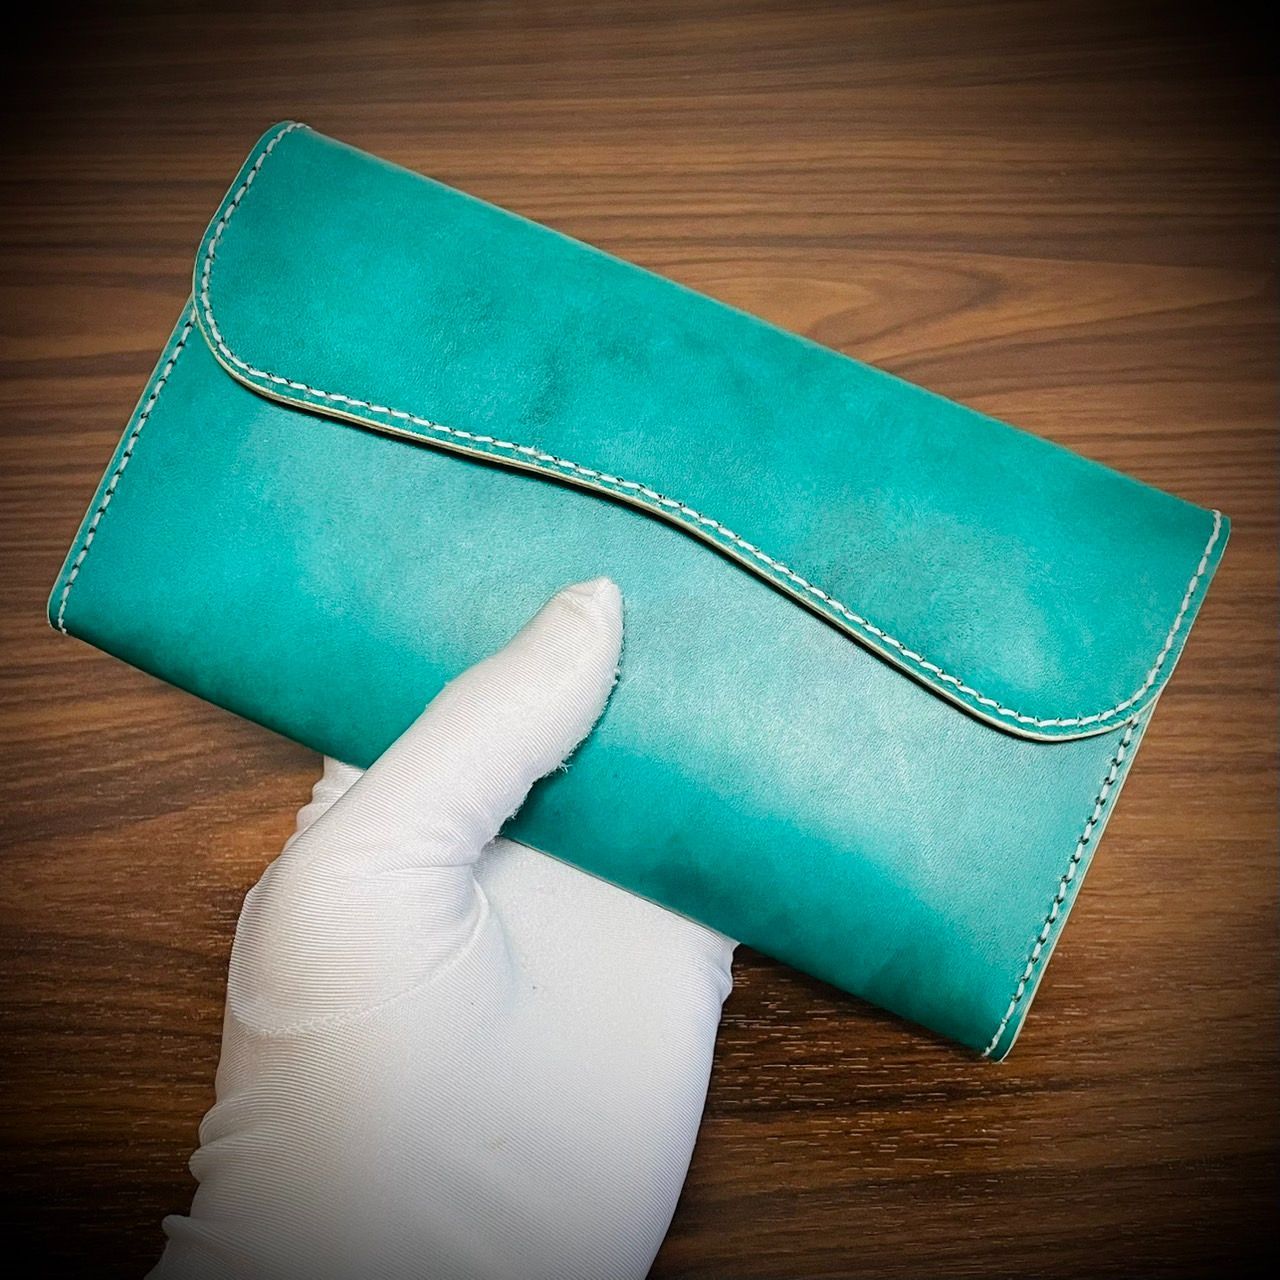 経年変化を楽しむ フラップ式 長財布 総手縫い 財布 フルレザー 大容量